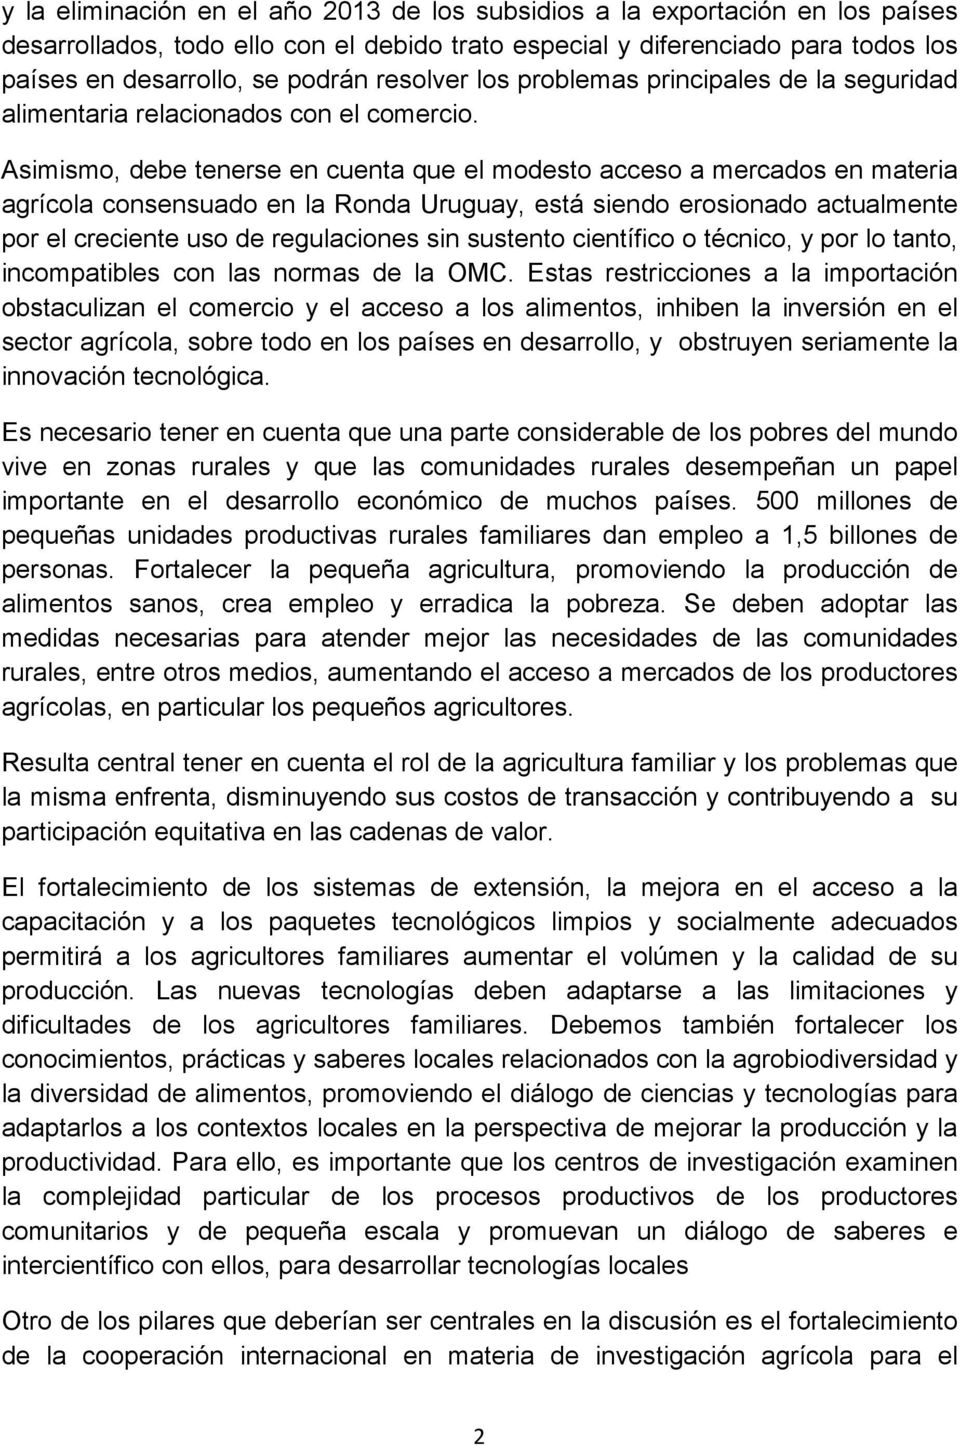 Asimismo, debe tenerse en cuenta que el modesto acceso a mercados en materia agrícola consensuado en la Ronda Uruguay, está siendo erosionado actualmente por el creciente uso de regulaciones sin